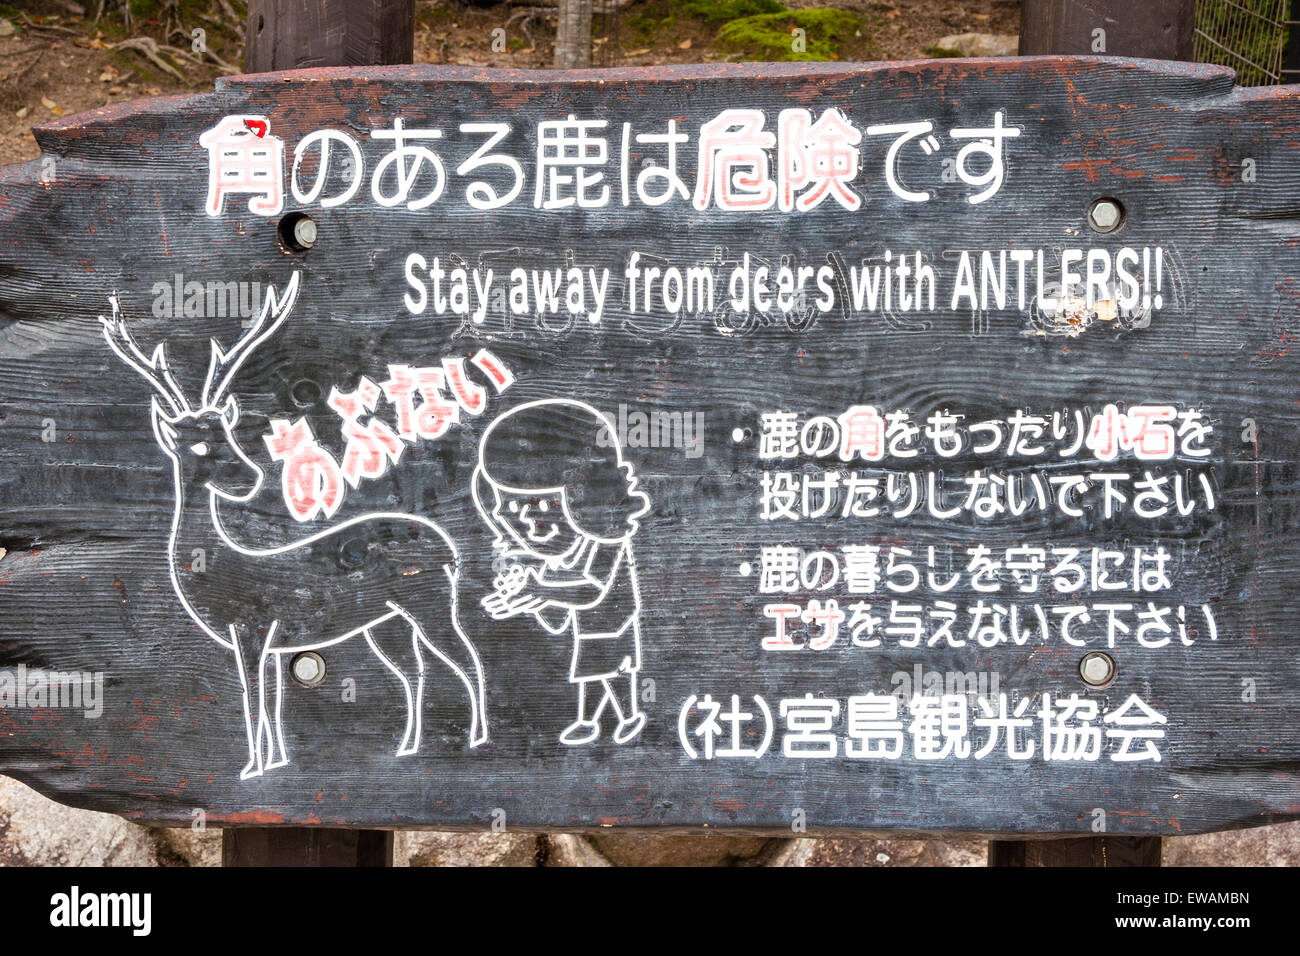 Japanische Zeichen Warnung Kinder der Gefahr vom Hirsch mit geweih an der touristischen Attraktion, der Insel Miyajima, Japan, wo Hirsche Spaziergang rund um Straßen. Stockfoto